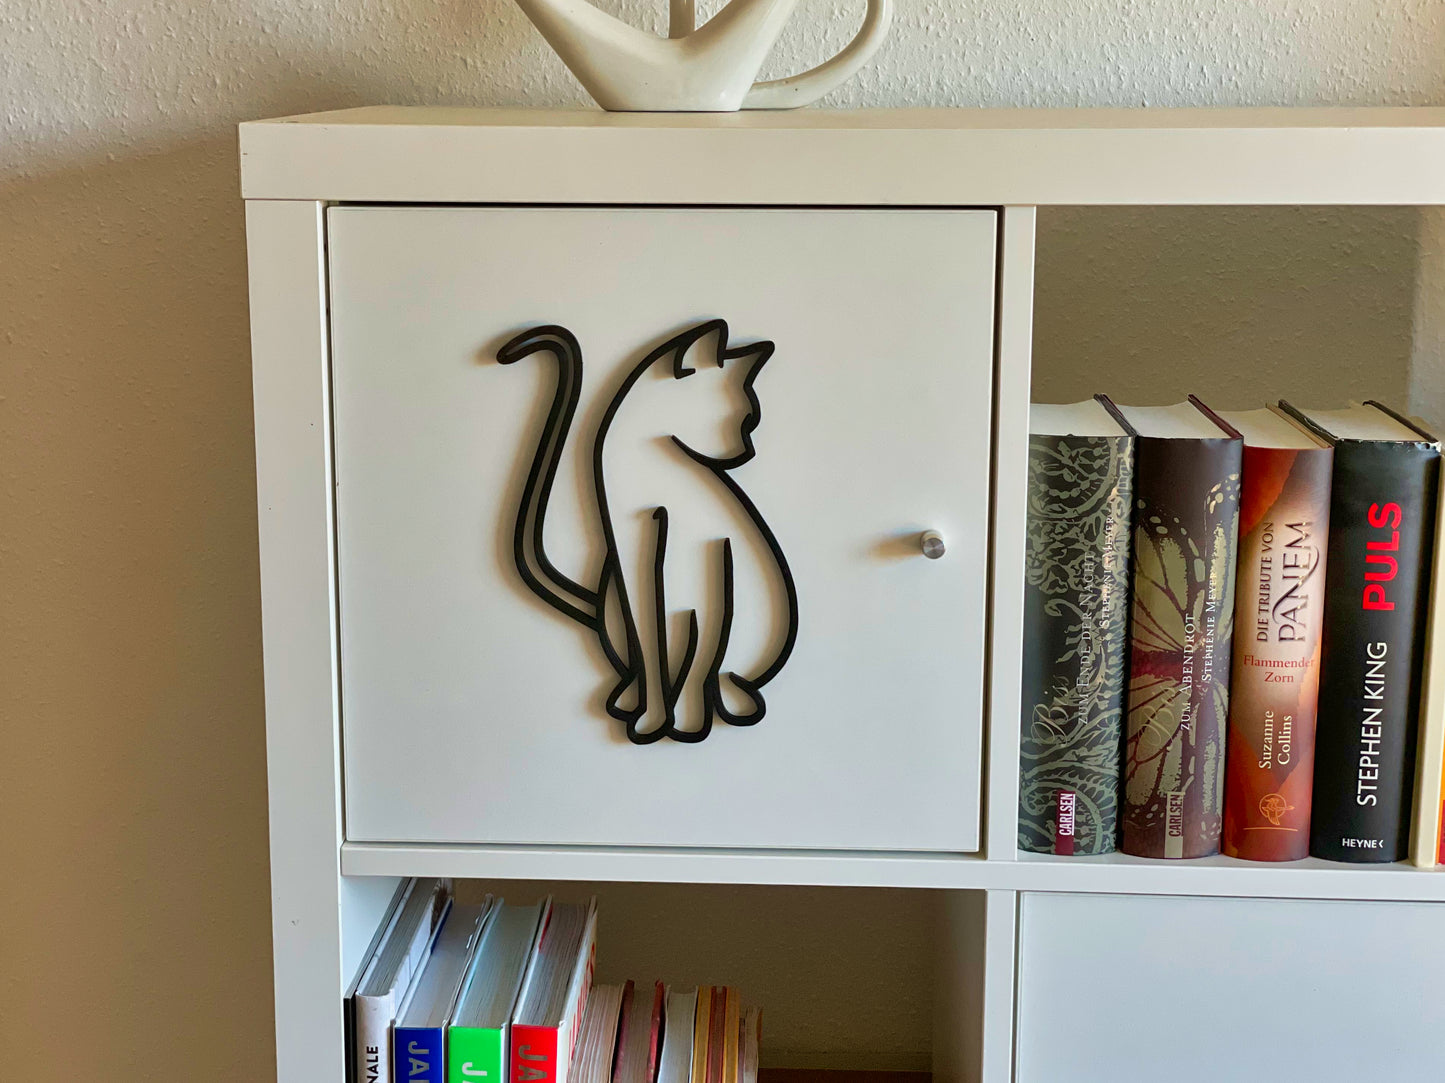 Katzenzauber: Wanddekoration 3D-gedruckt - Elegante Katzenfigur in glitzernden Farben für Ihr Zuhause!s recyclebarem PLA Kunststoff - Ideales Geschenk für Katzenfreunde